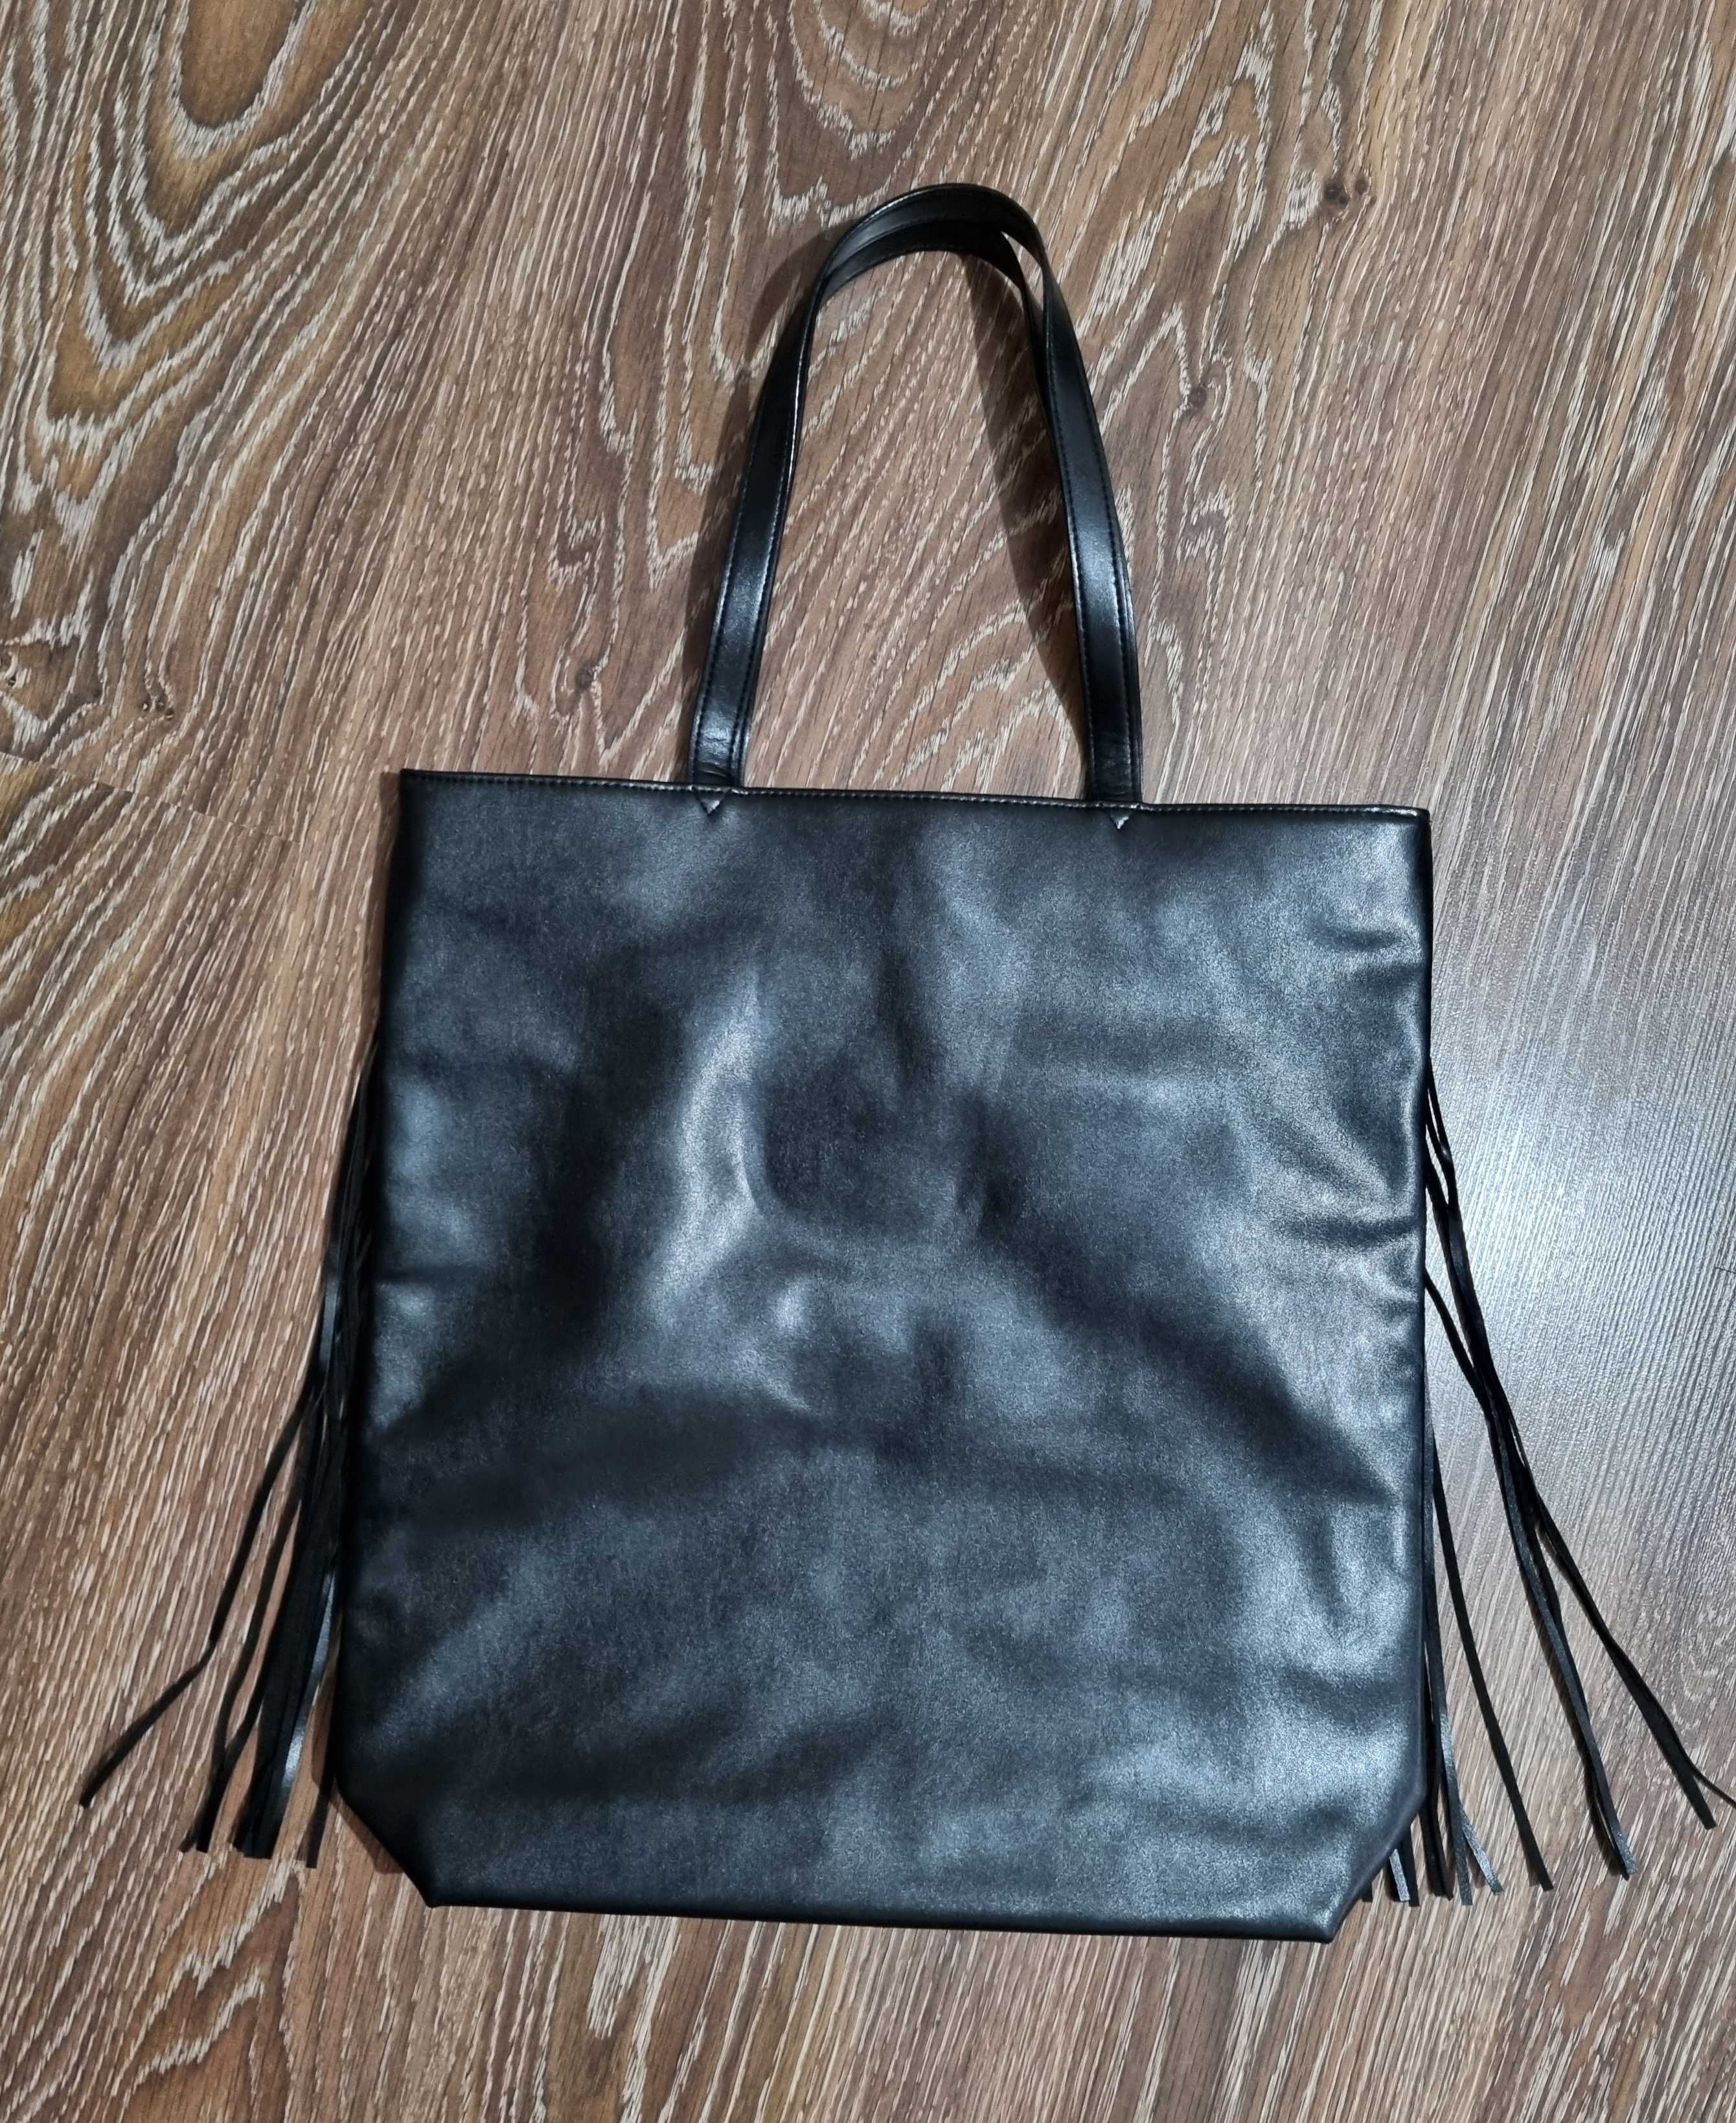 Черна чанта с ресни Victoria's secret-95лв.НОВА